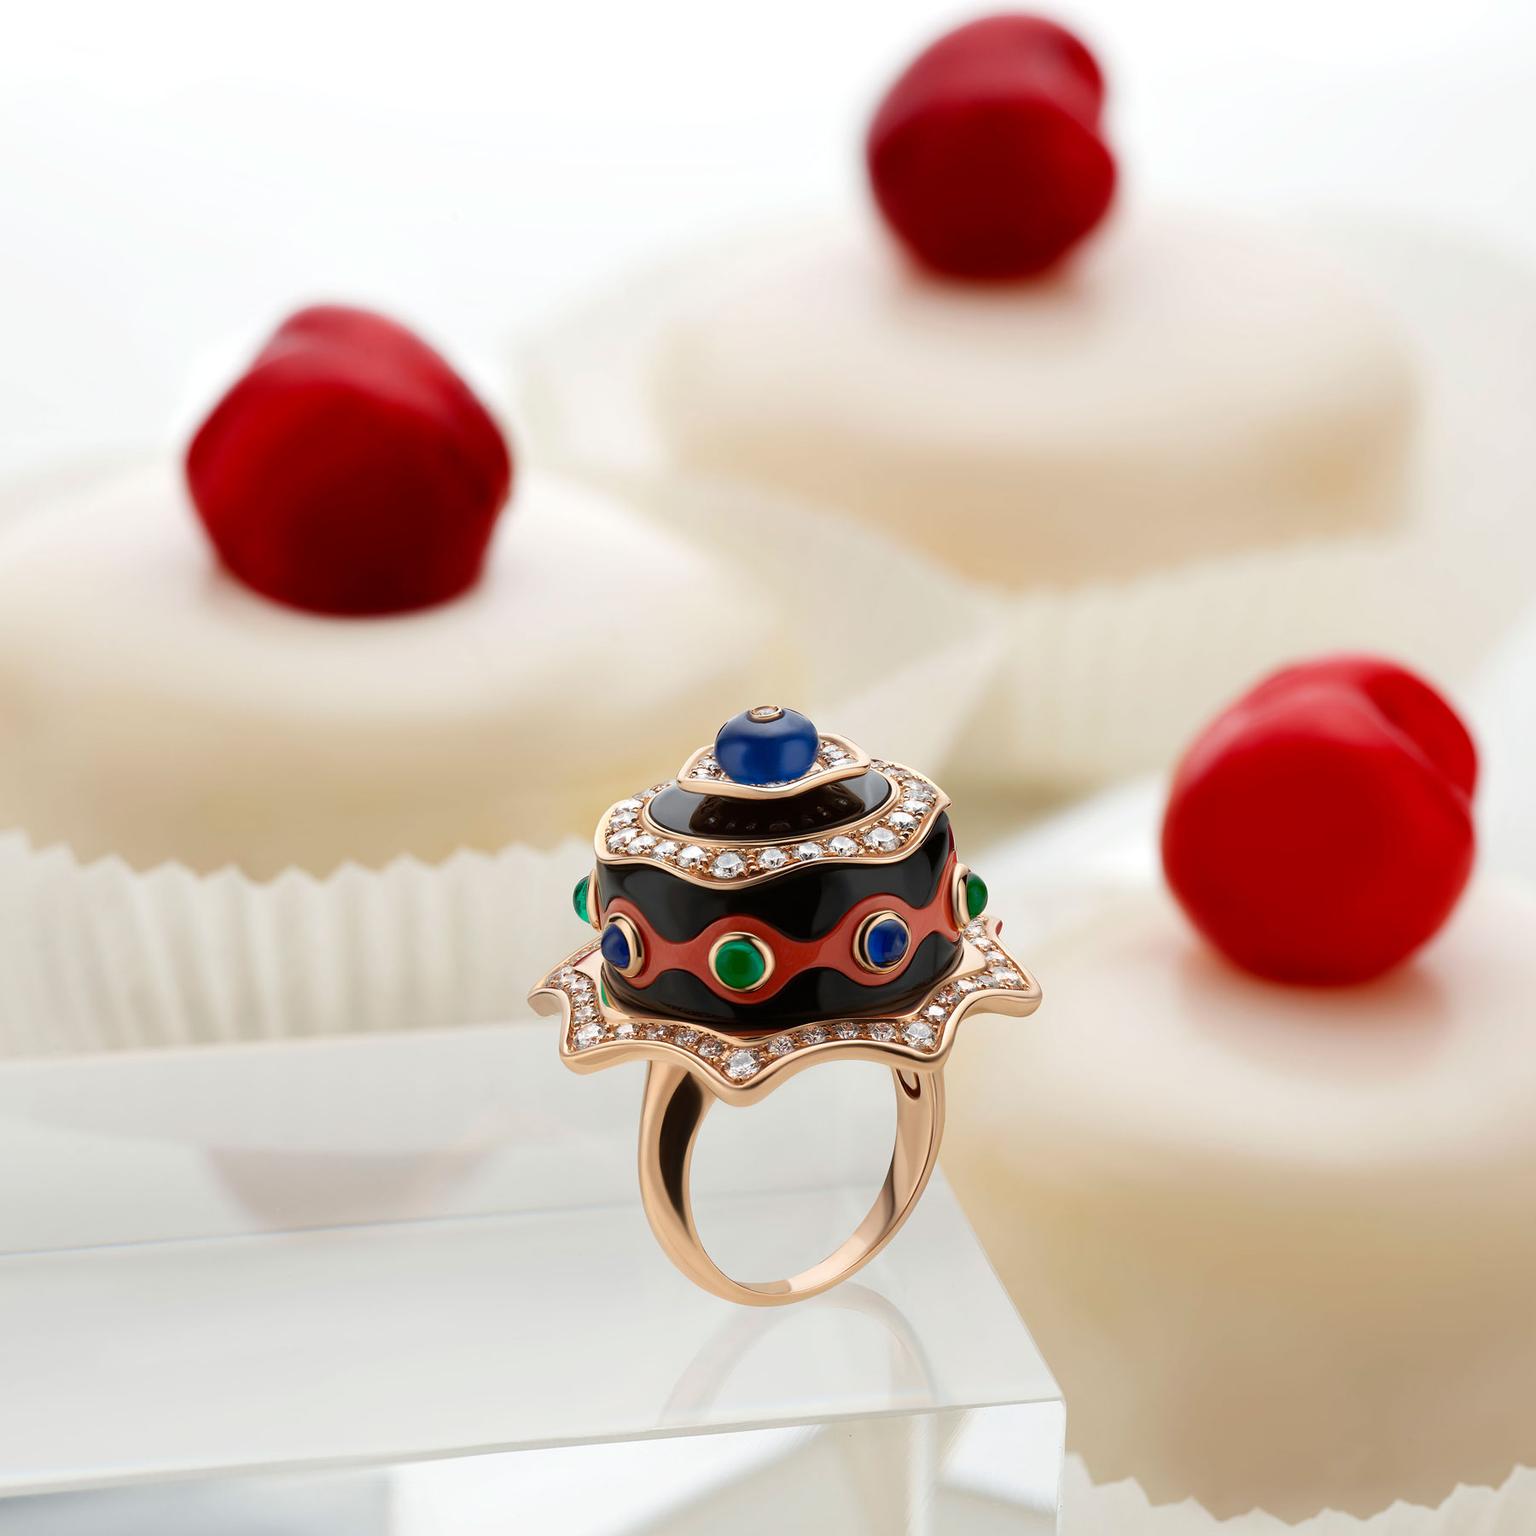 Bulgari Festa Chocolate Cake high jewellery ring